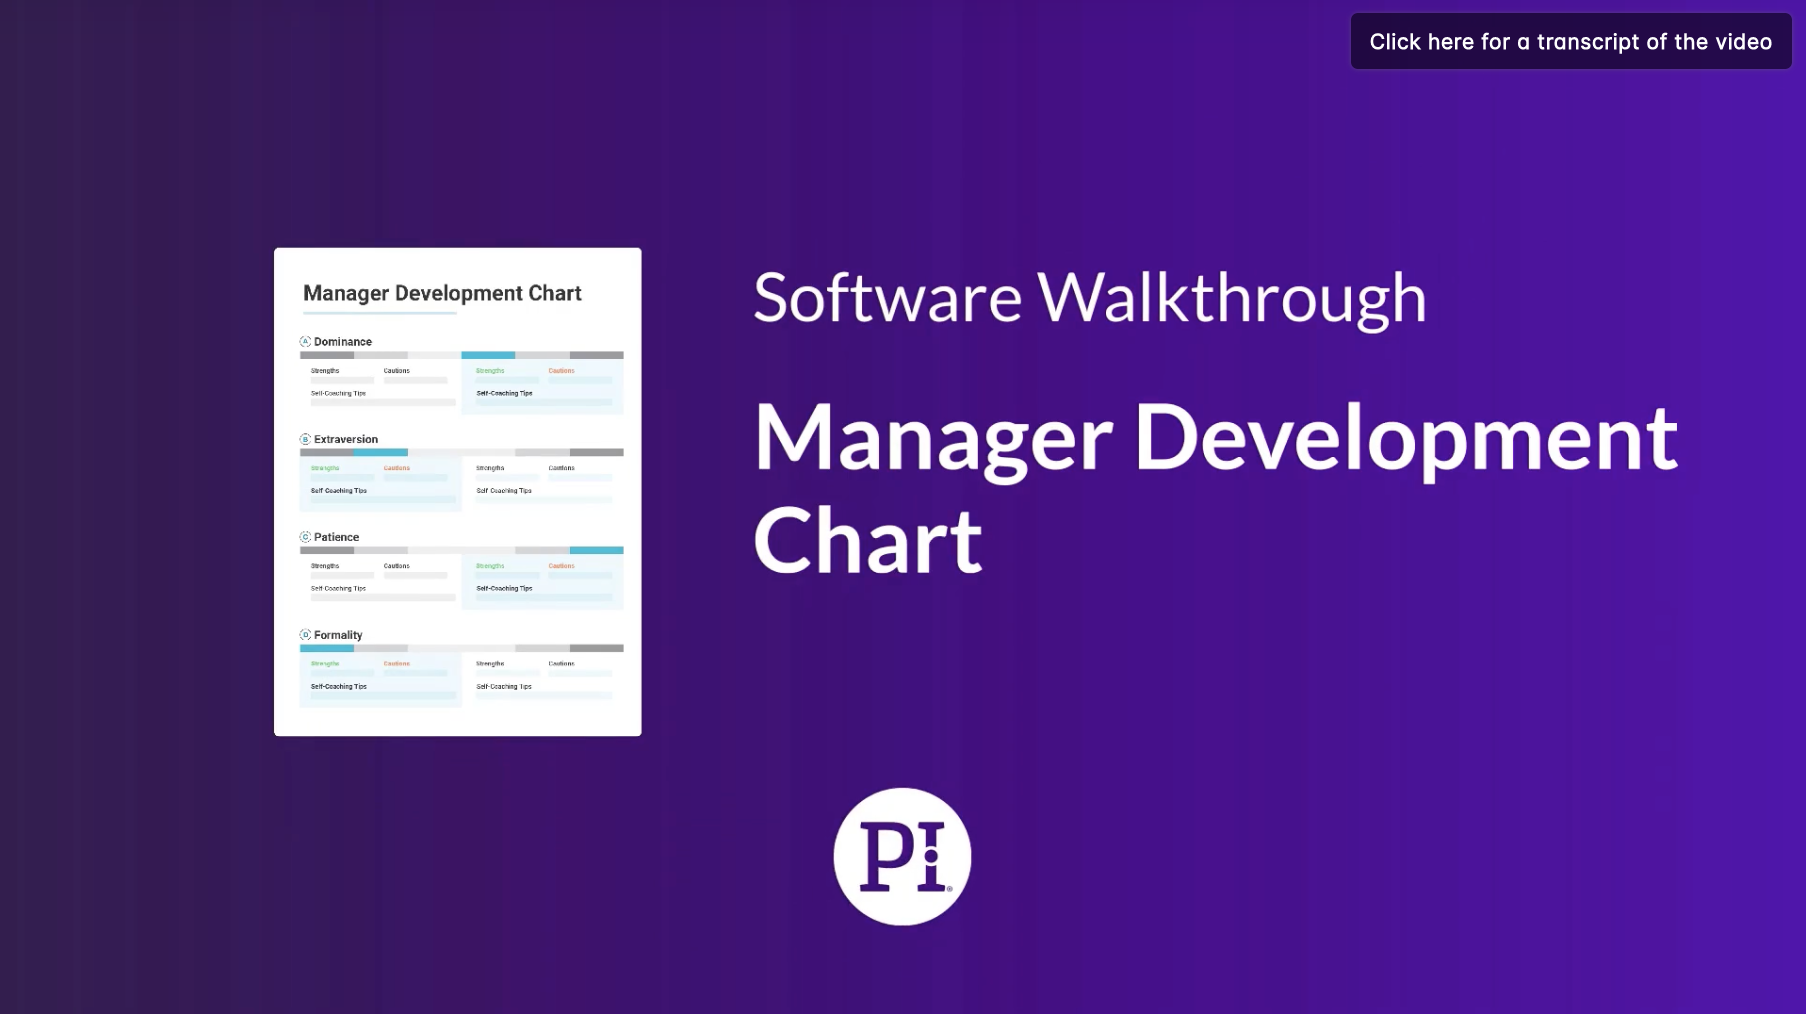 pi Manager Development Chart Walkthrough